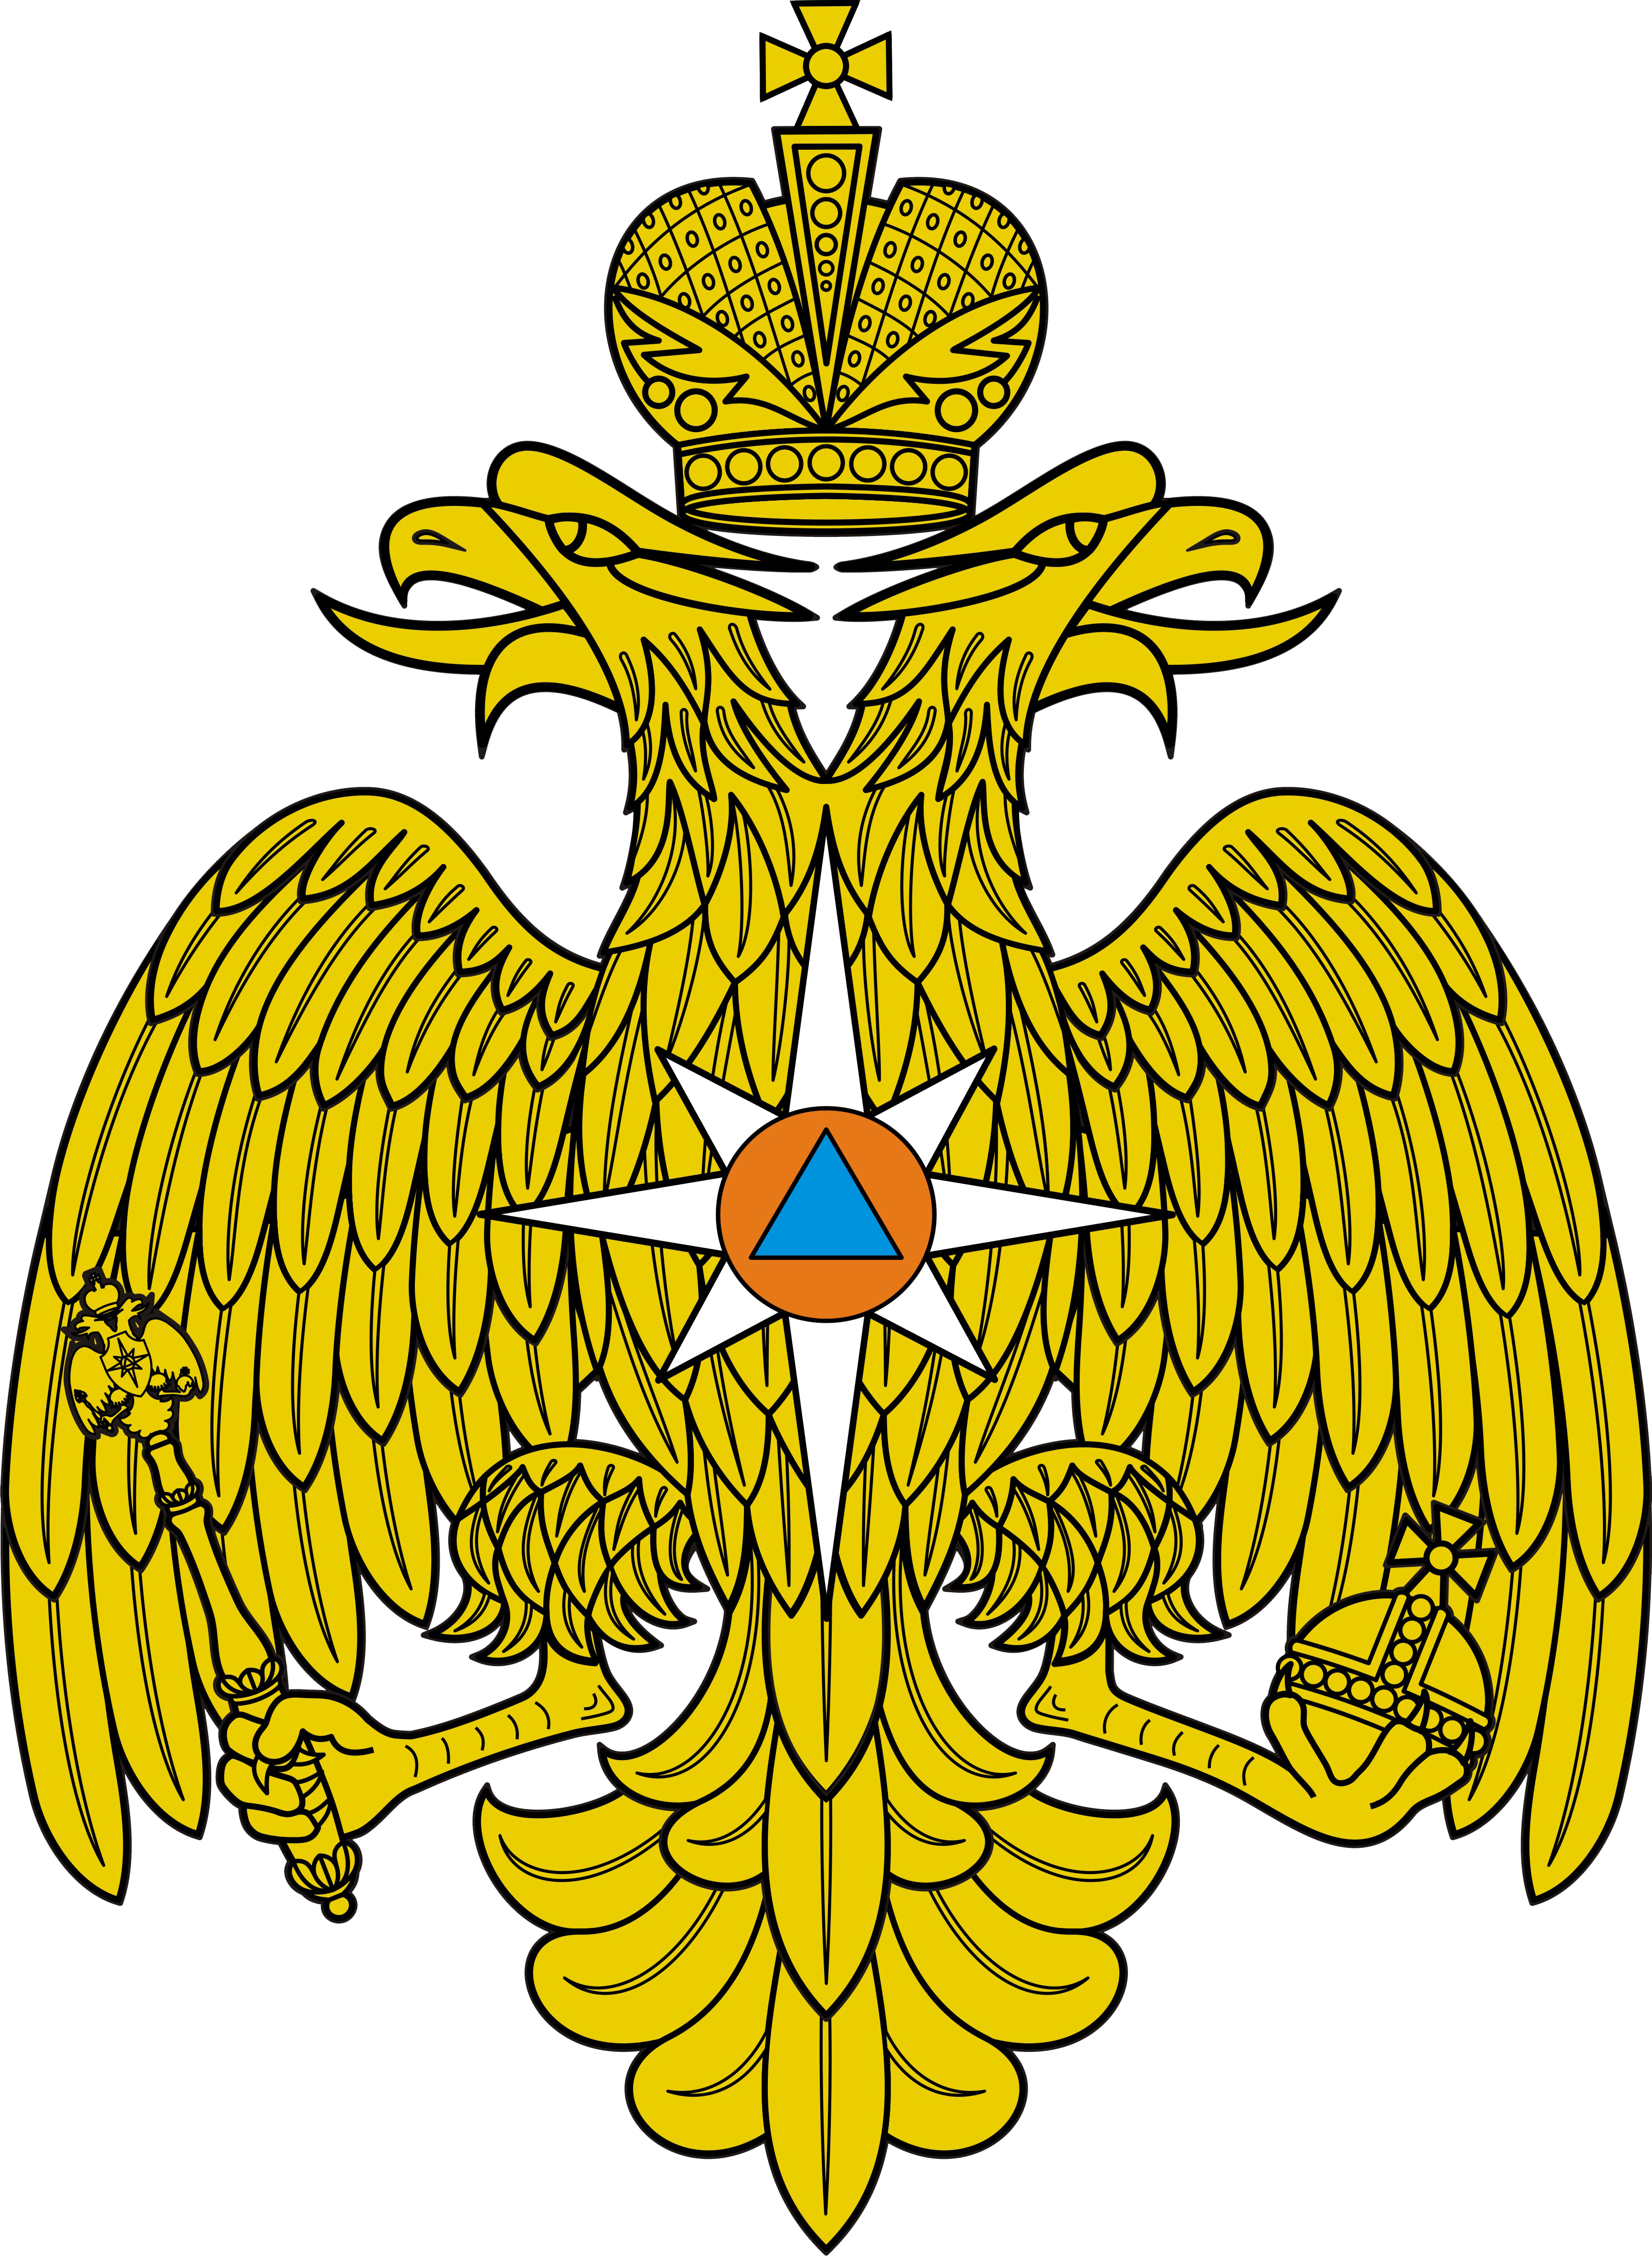 Srednyaya emblema MChS Rossii